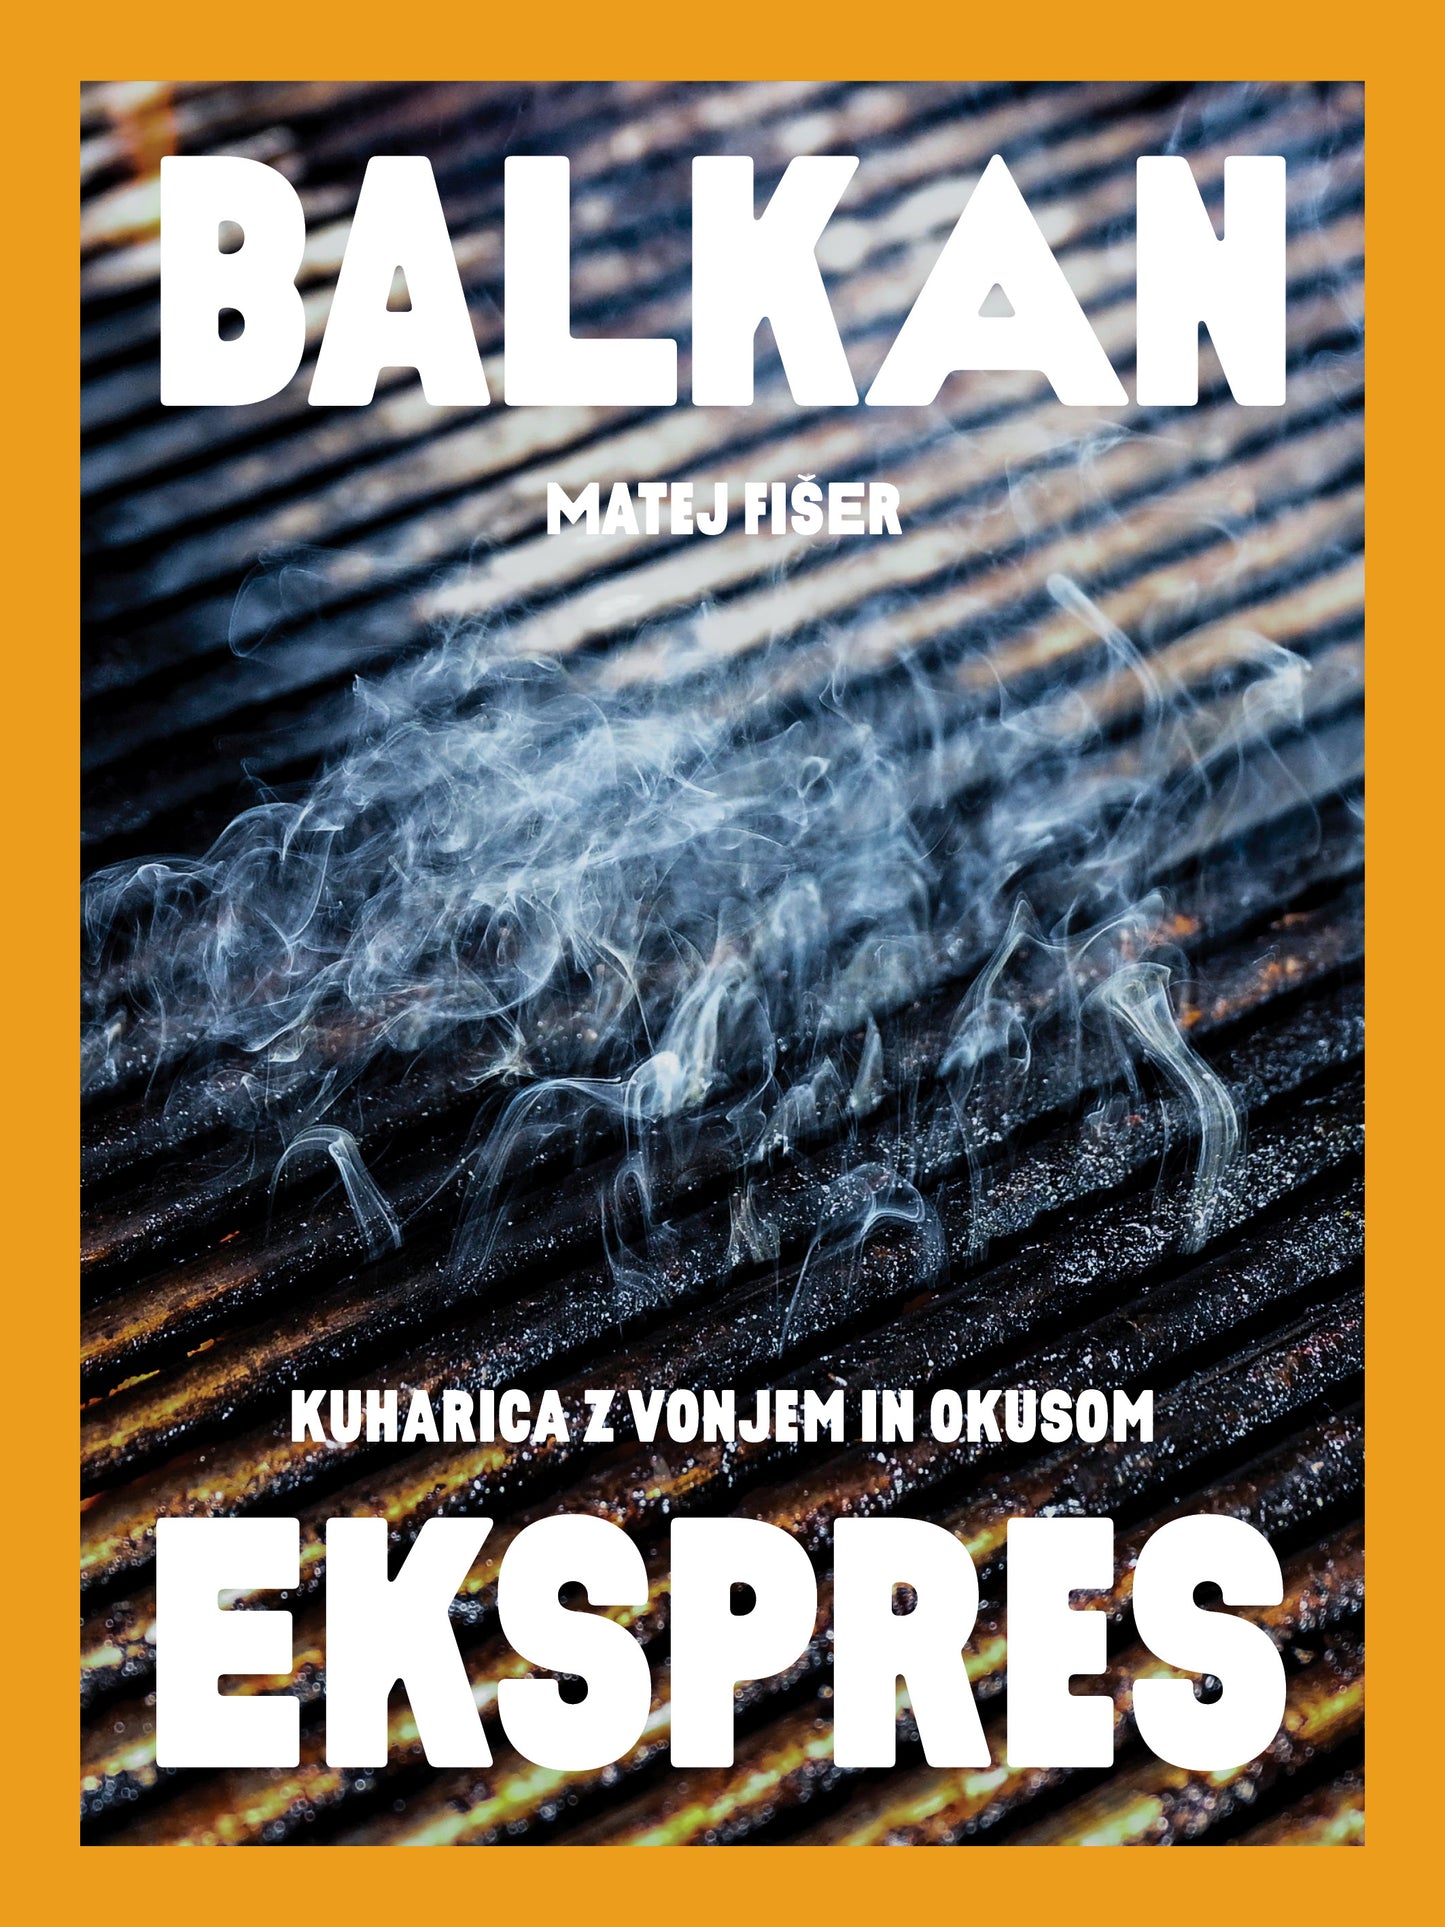 Balkan ekspres: kuharica z vonjem in okusom